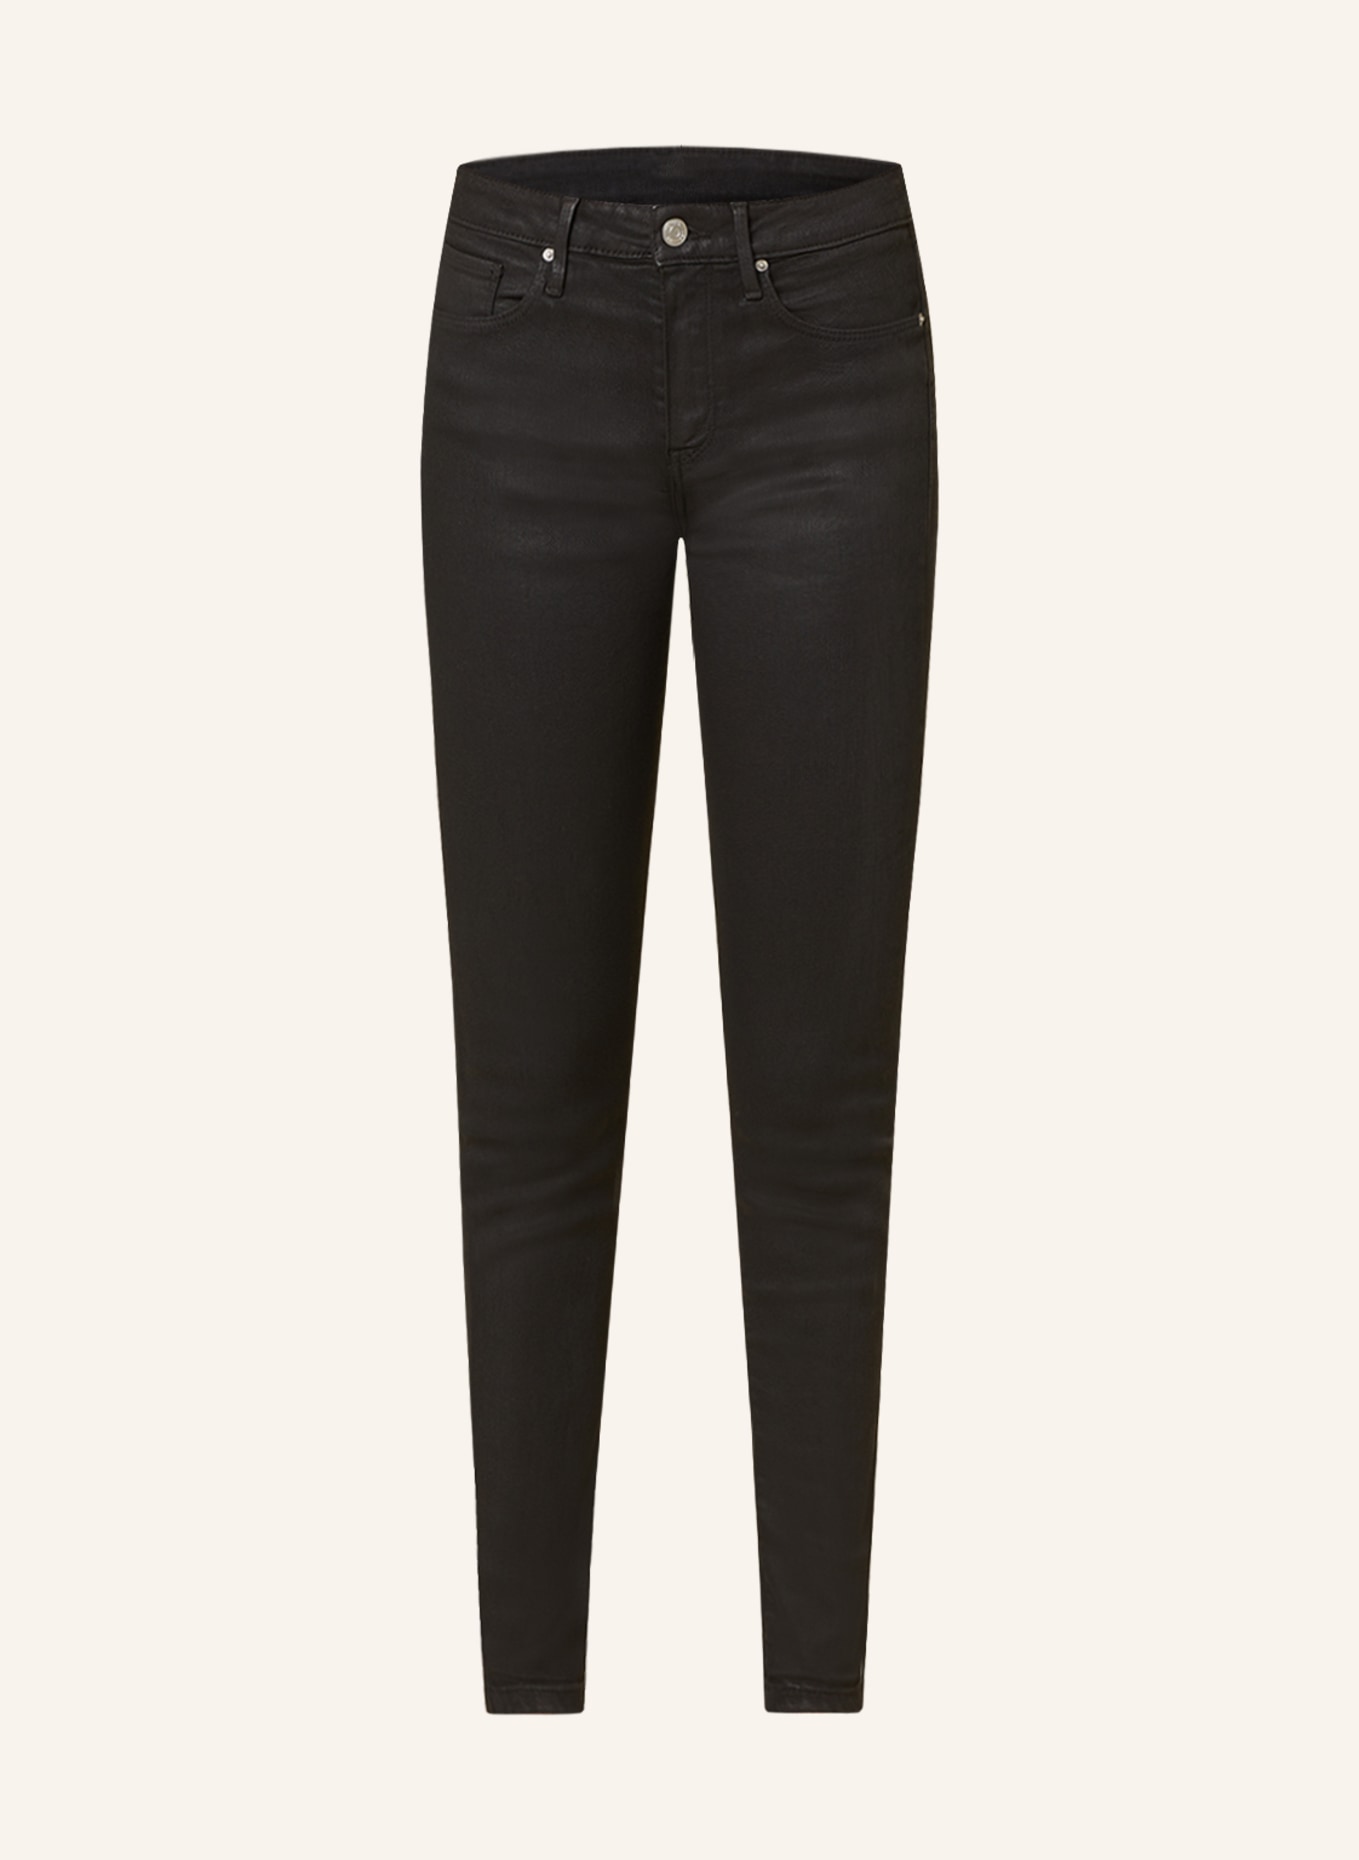 TOMMY HILFIGER Skinny Jeans COMO, Color: 1B0 Black Coated (Image 1)